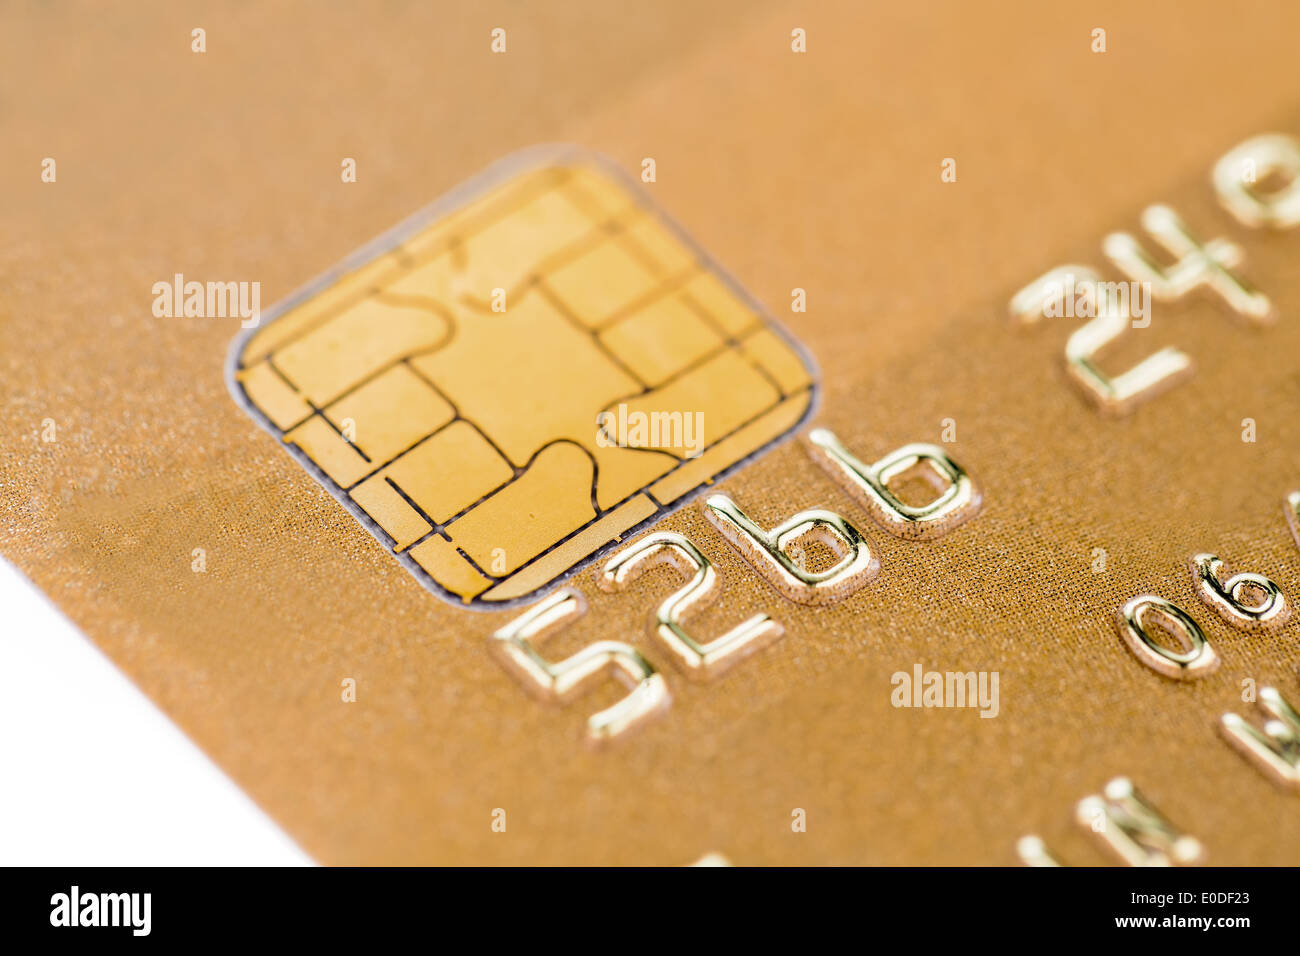 Eine goldene Kreditkarte für die bargeldlose Zahlung, Eine Goldene Kreditkarte Zum Bargeldlosen Bezahlen Stockfoto